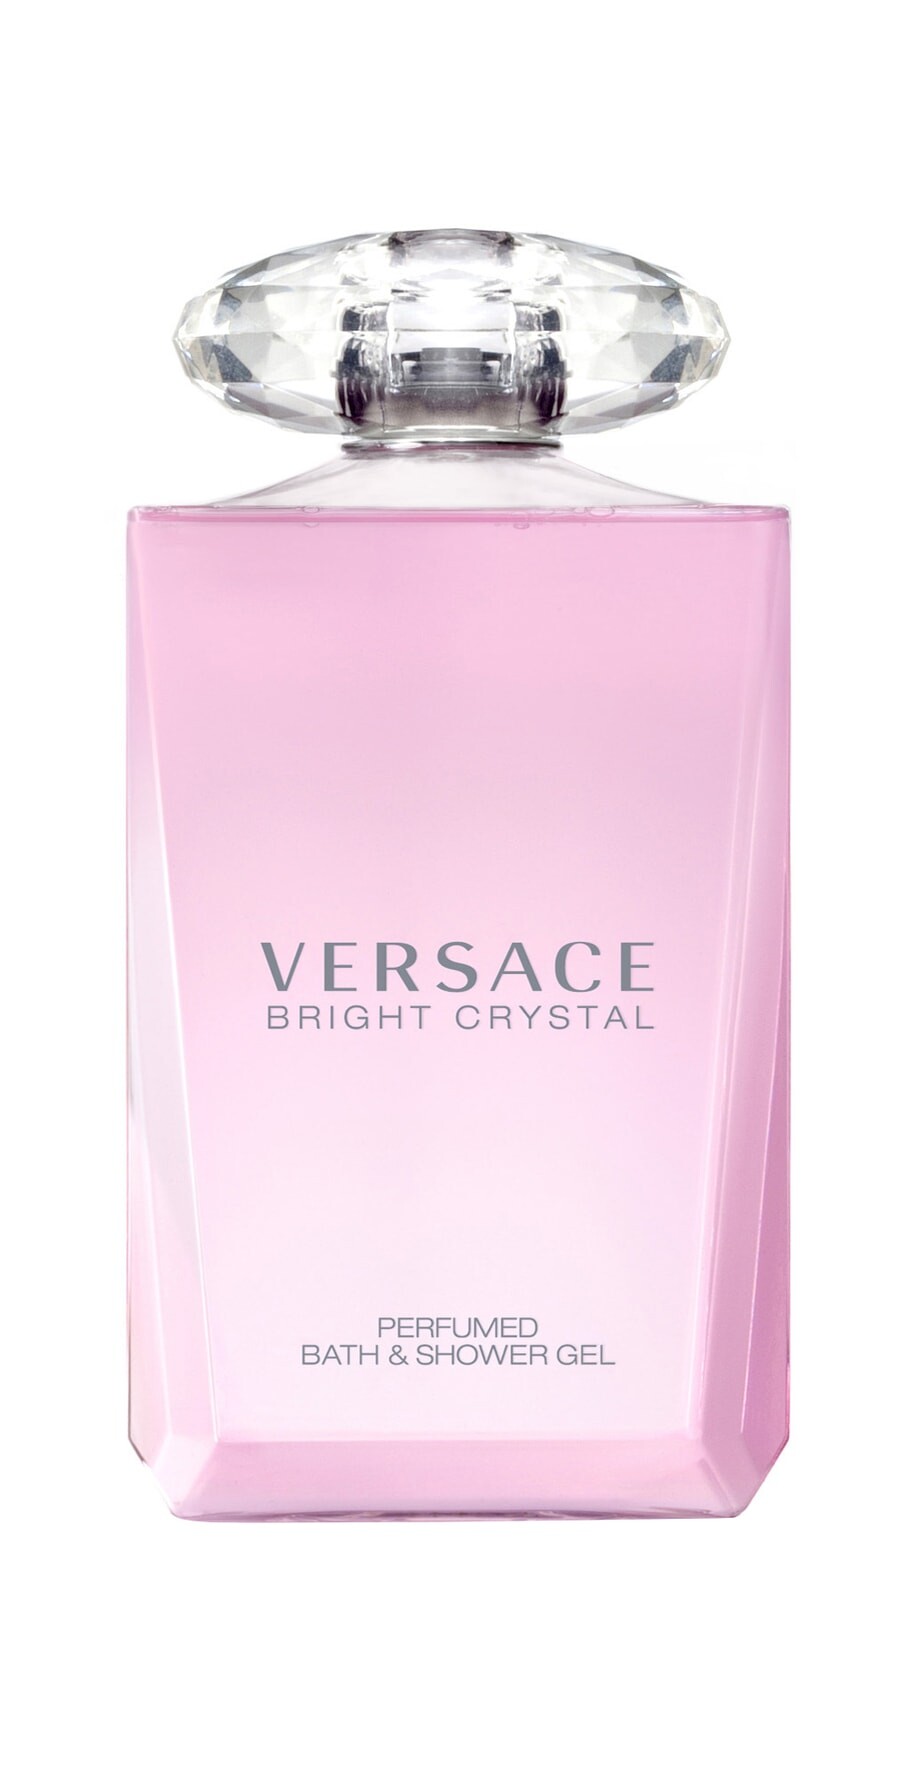 Duschgel Versace Bright Crystal Bath und Shower 200ml kaufen